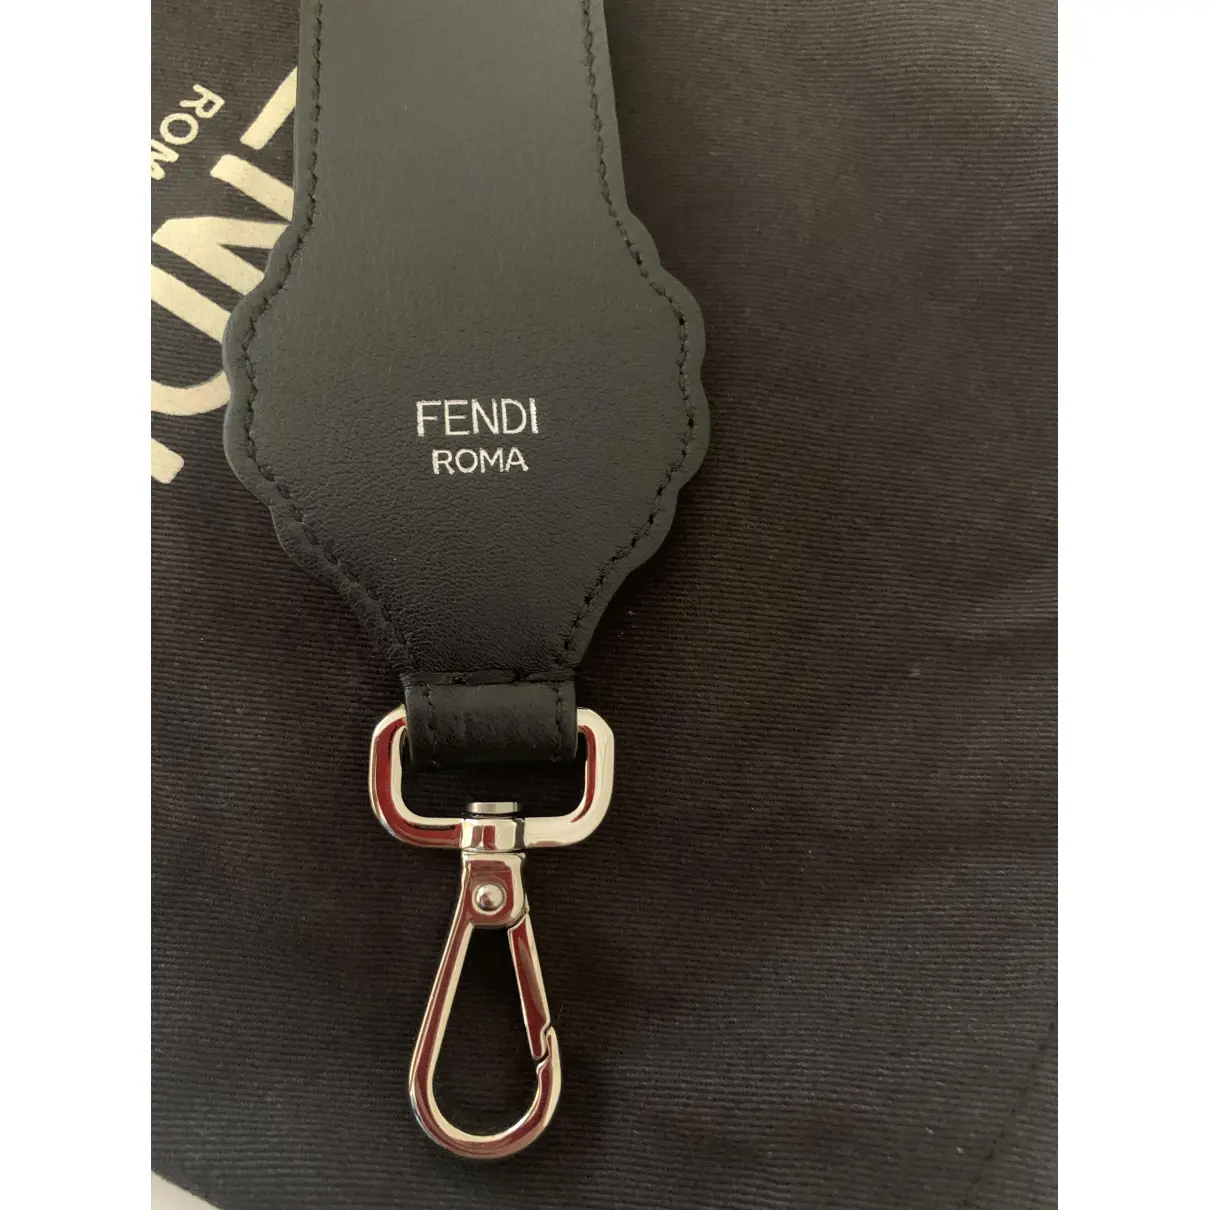 Buy Fendi Velvet purse online